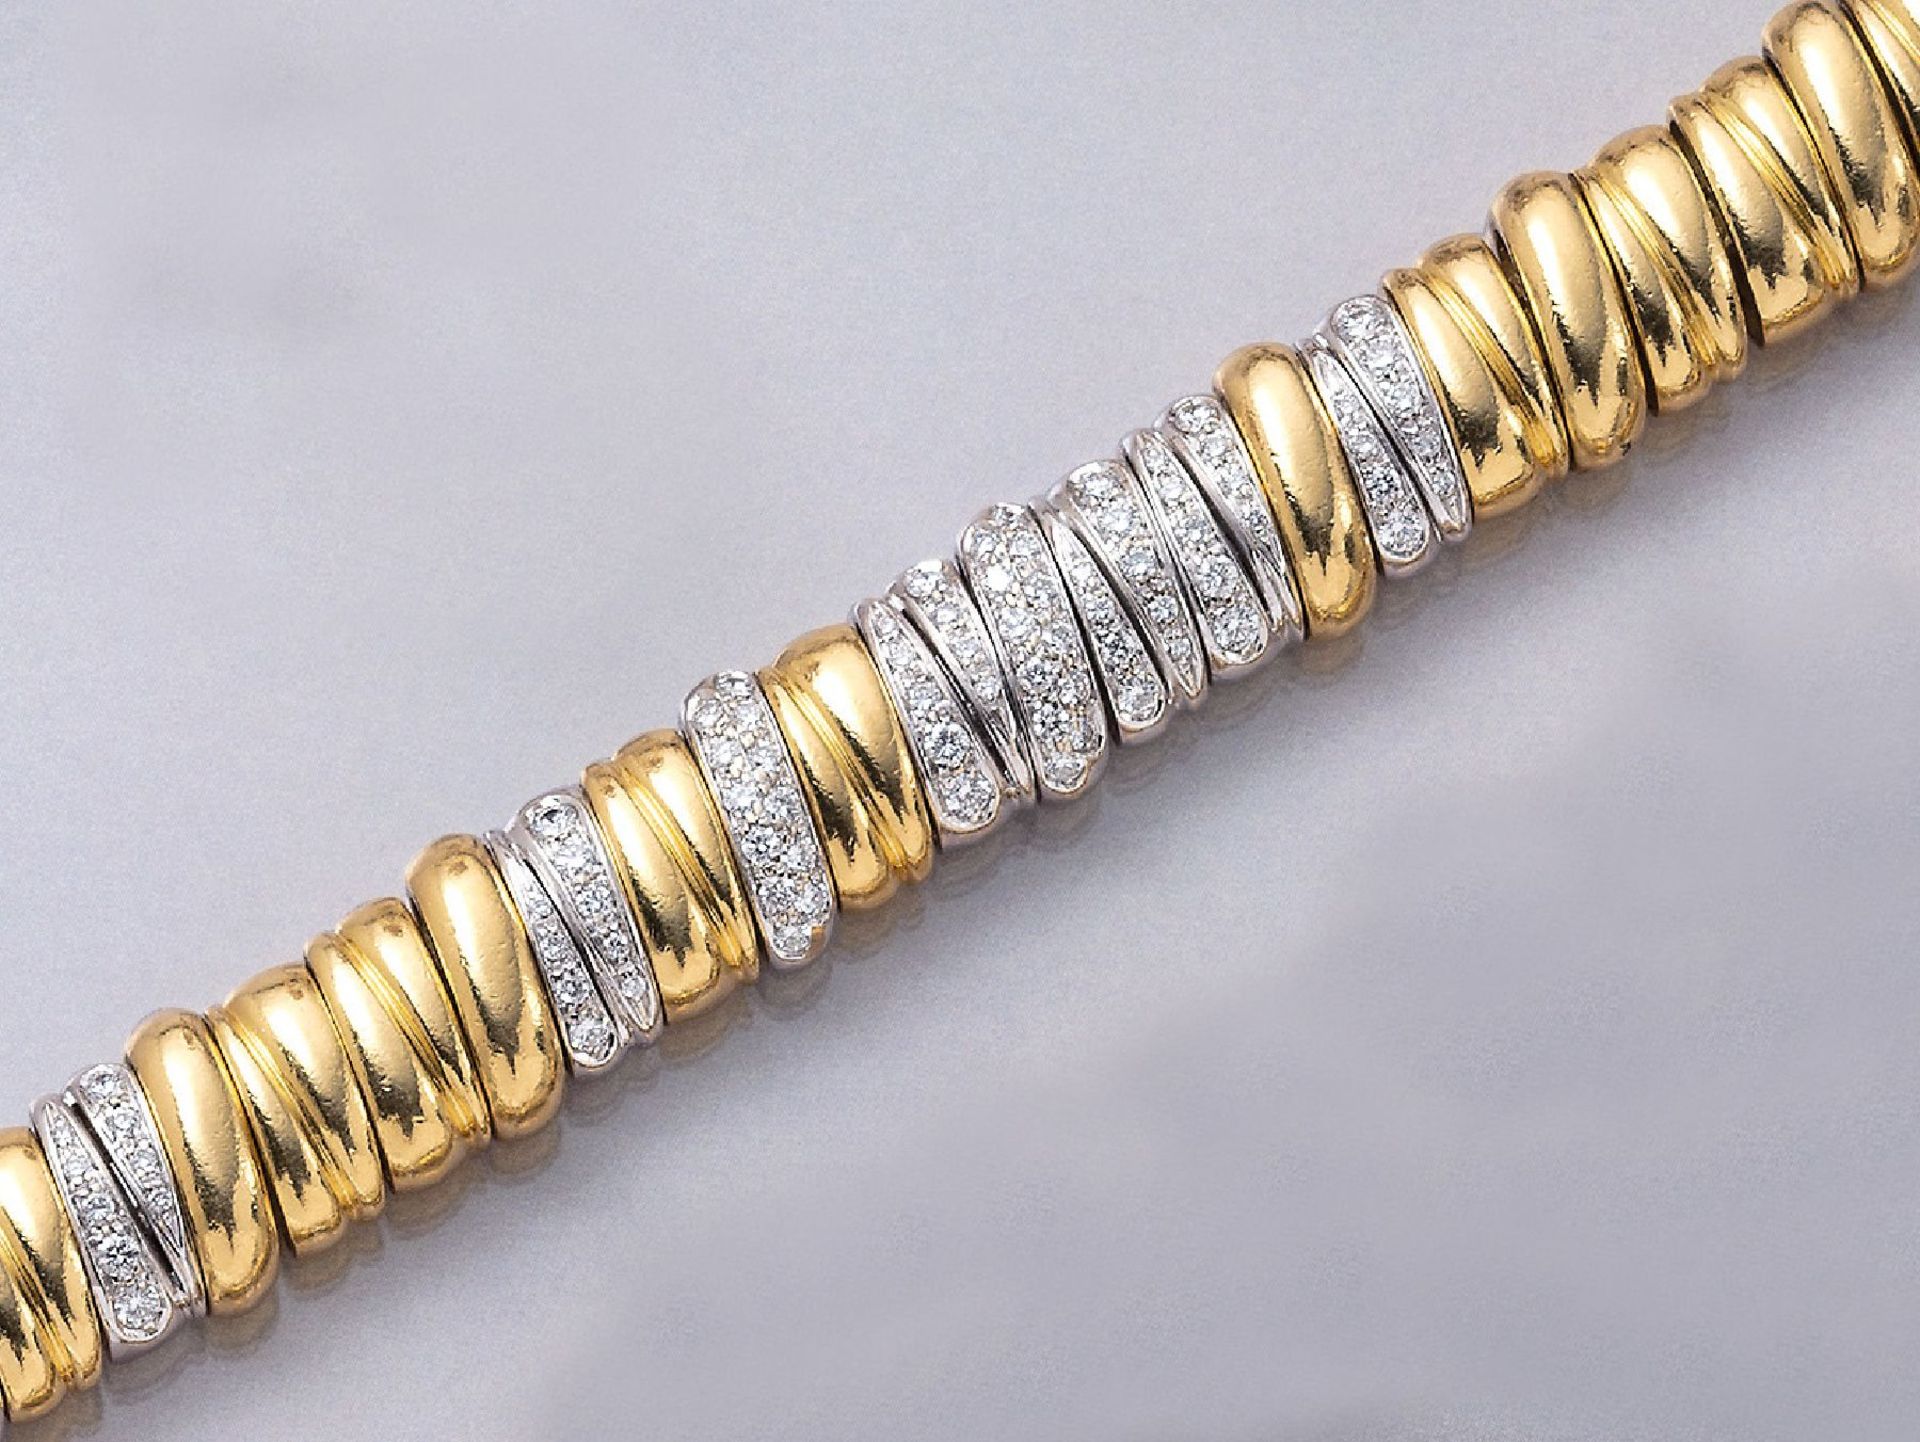 18 kt Gold POMELLATO Armband mit Brillanten, GG/WG 750/000, in WG gefasste Brillanten zus. ca. 3.0